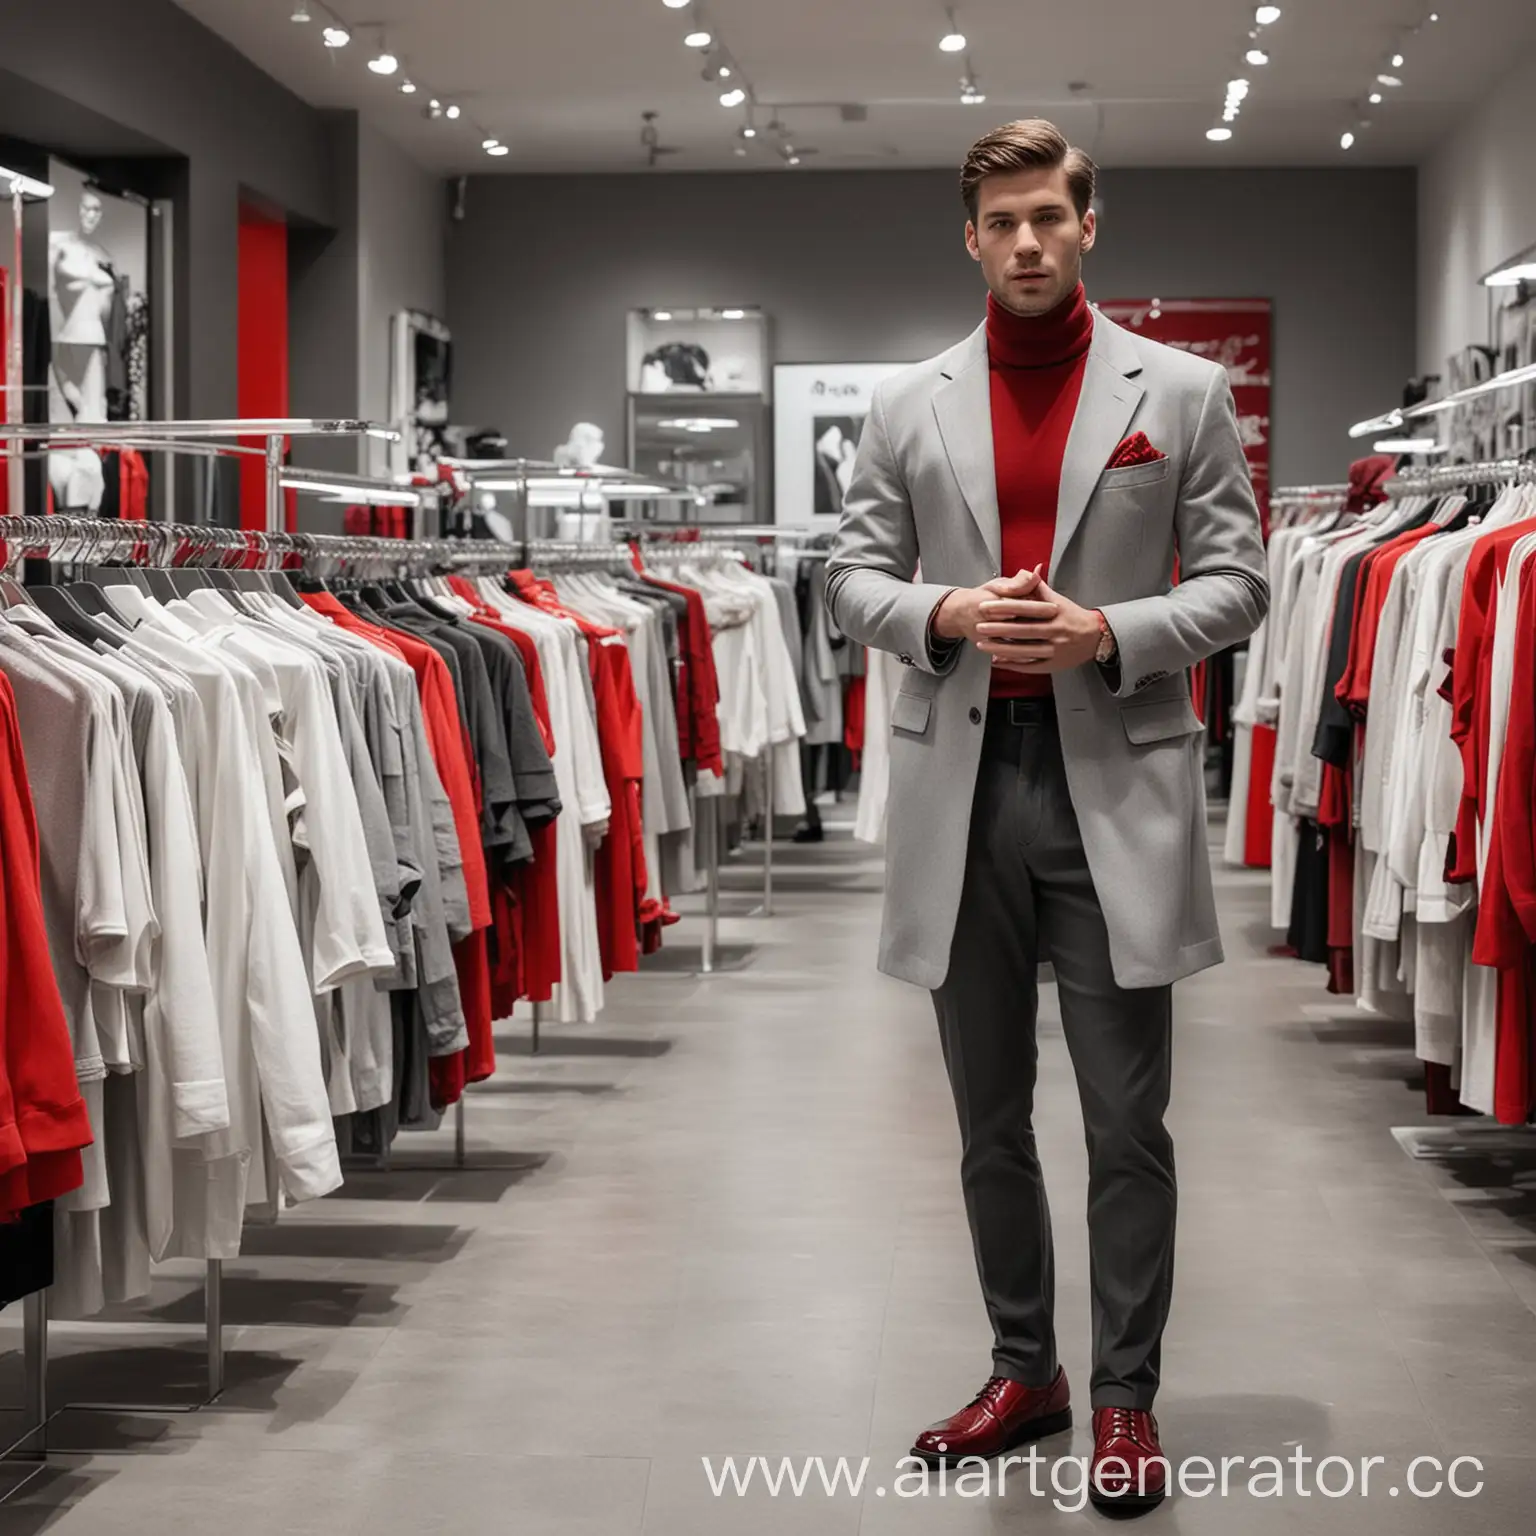 Тайный покупатель, стоит в магазине одежды, реалистичность как у фото, цветовая гамма выдержана в серых белых тонах с красными акцентами